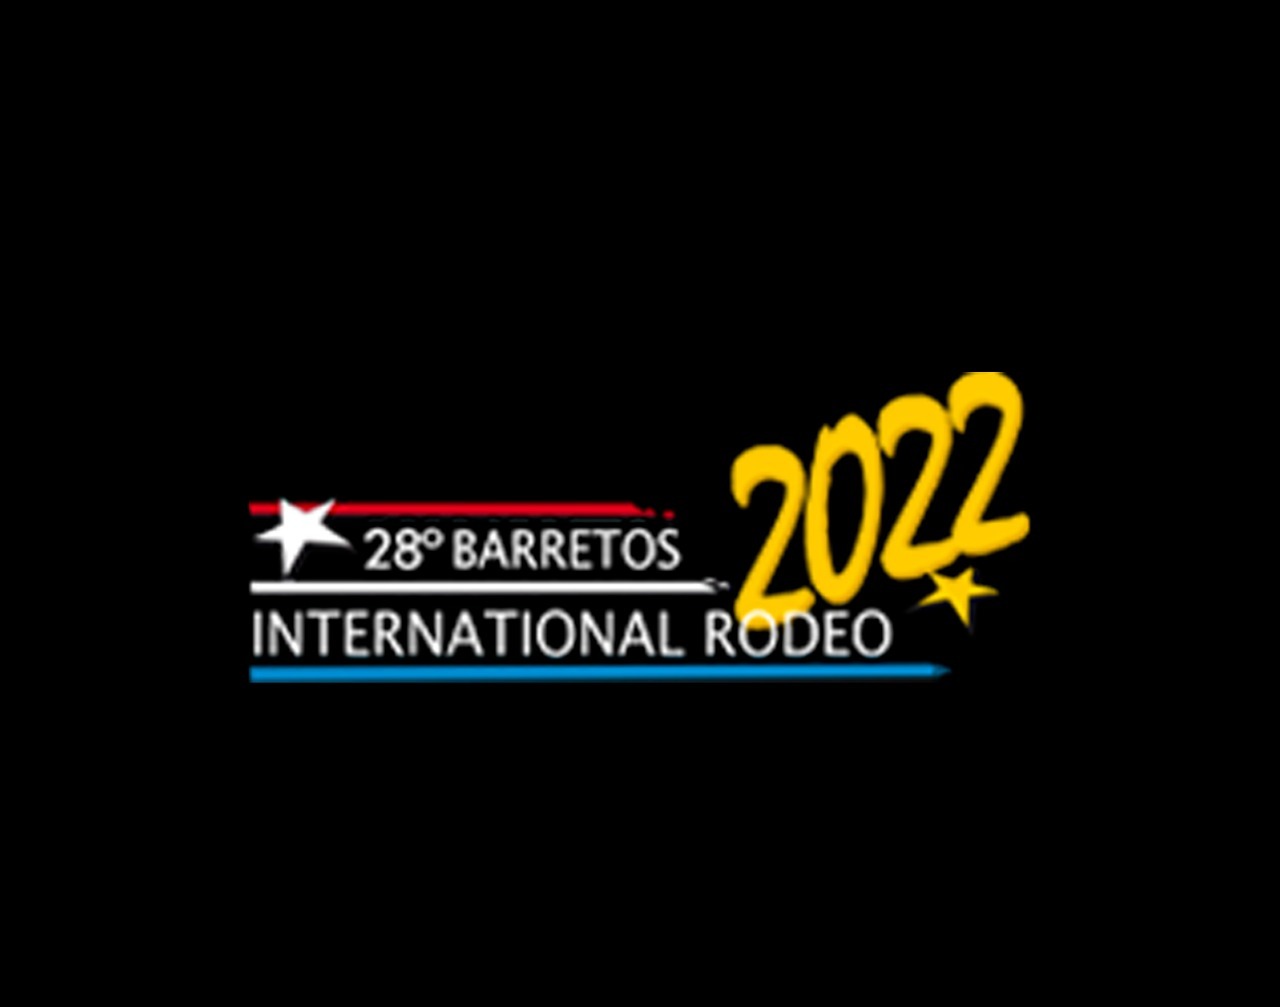 28º International Rodeo começa hoje com seis modalidades no ‘Barretão’